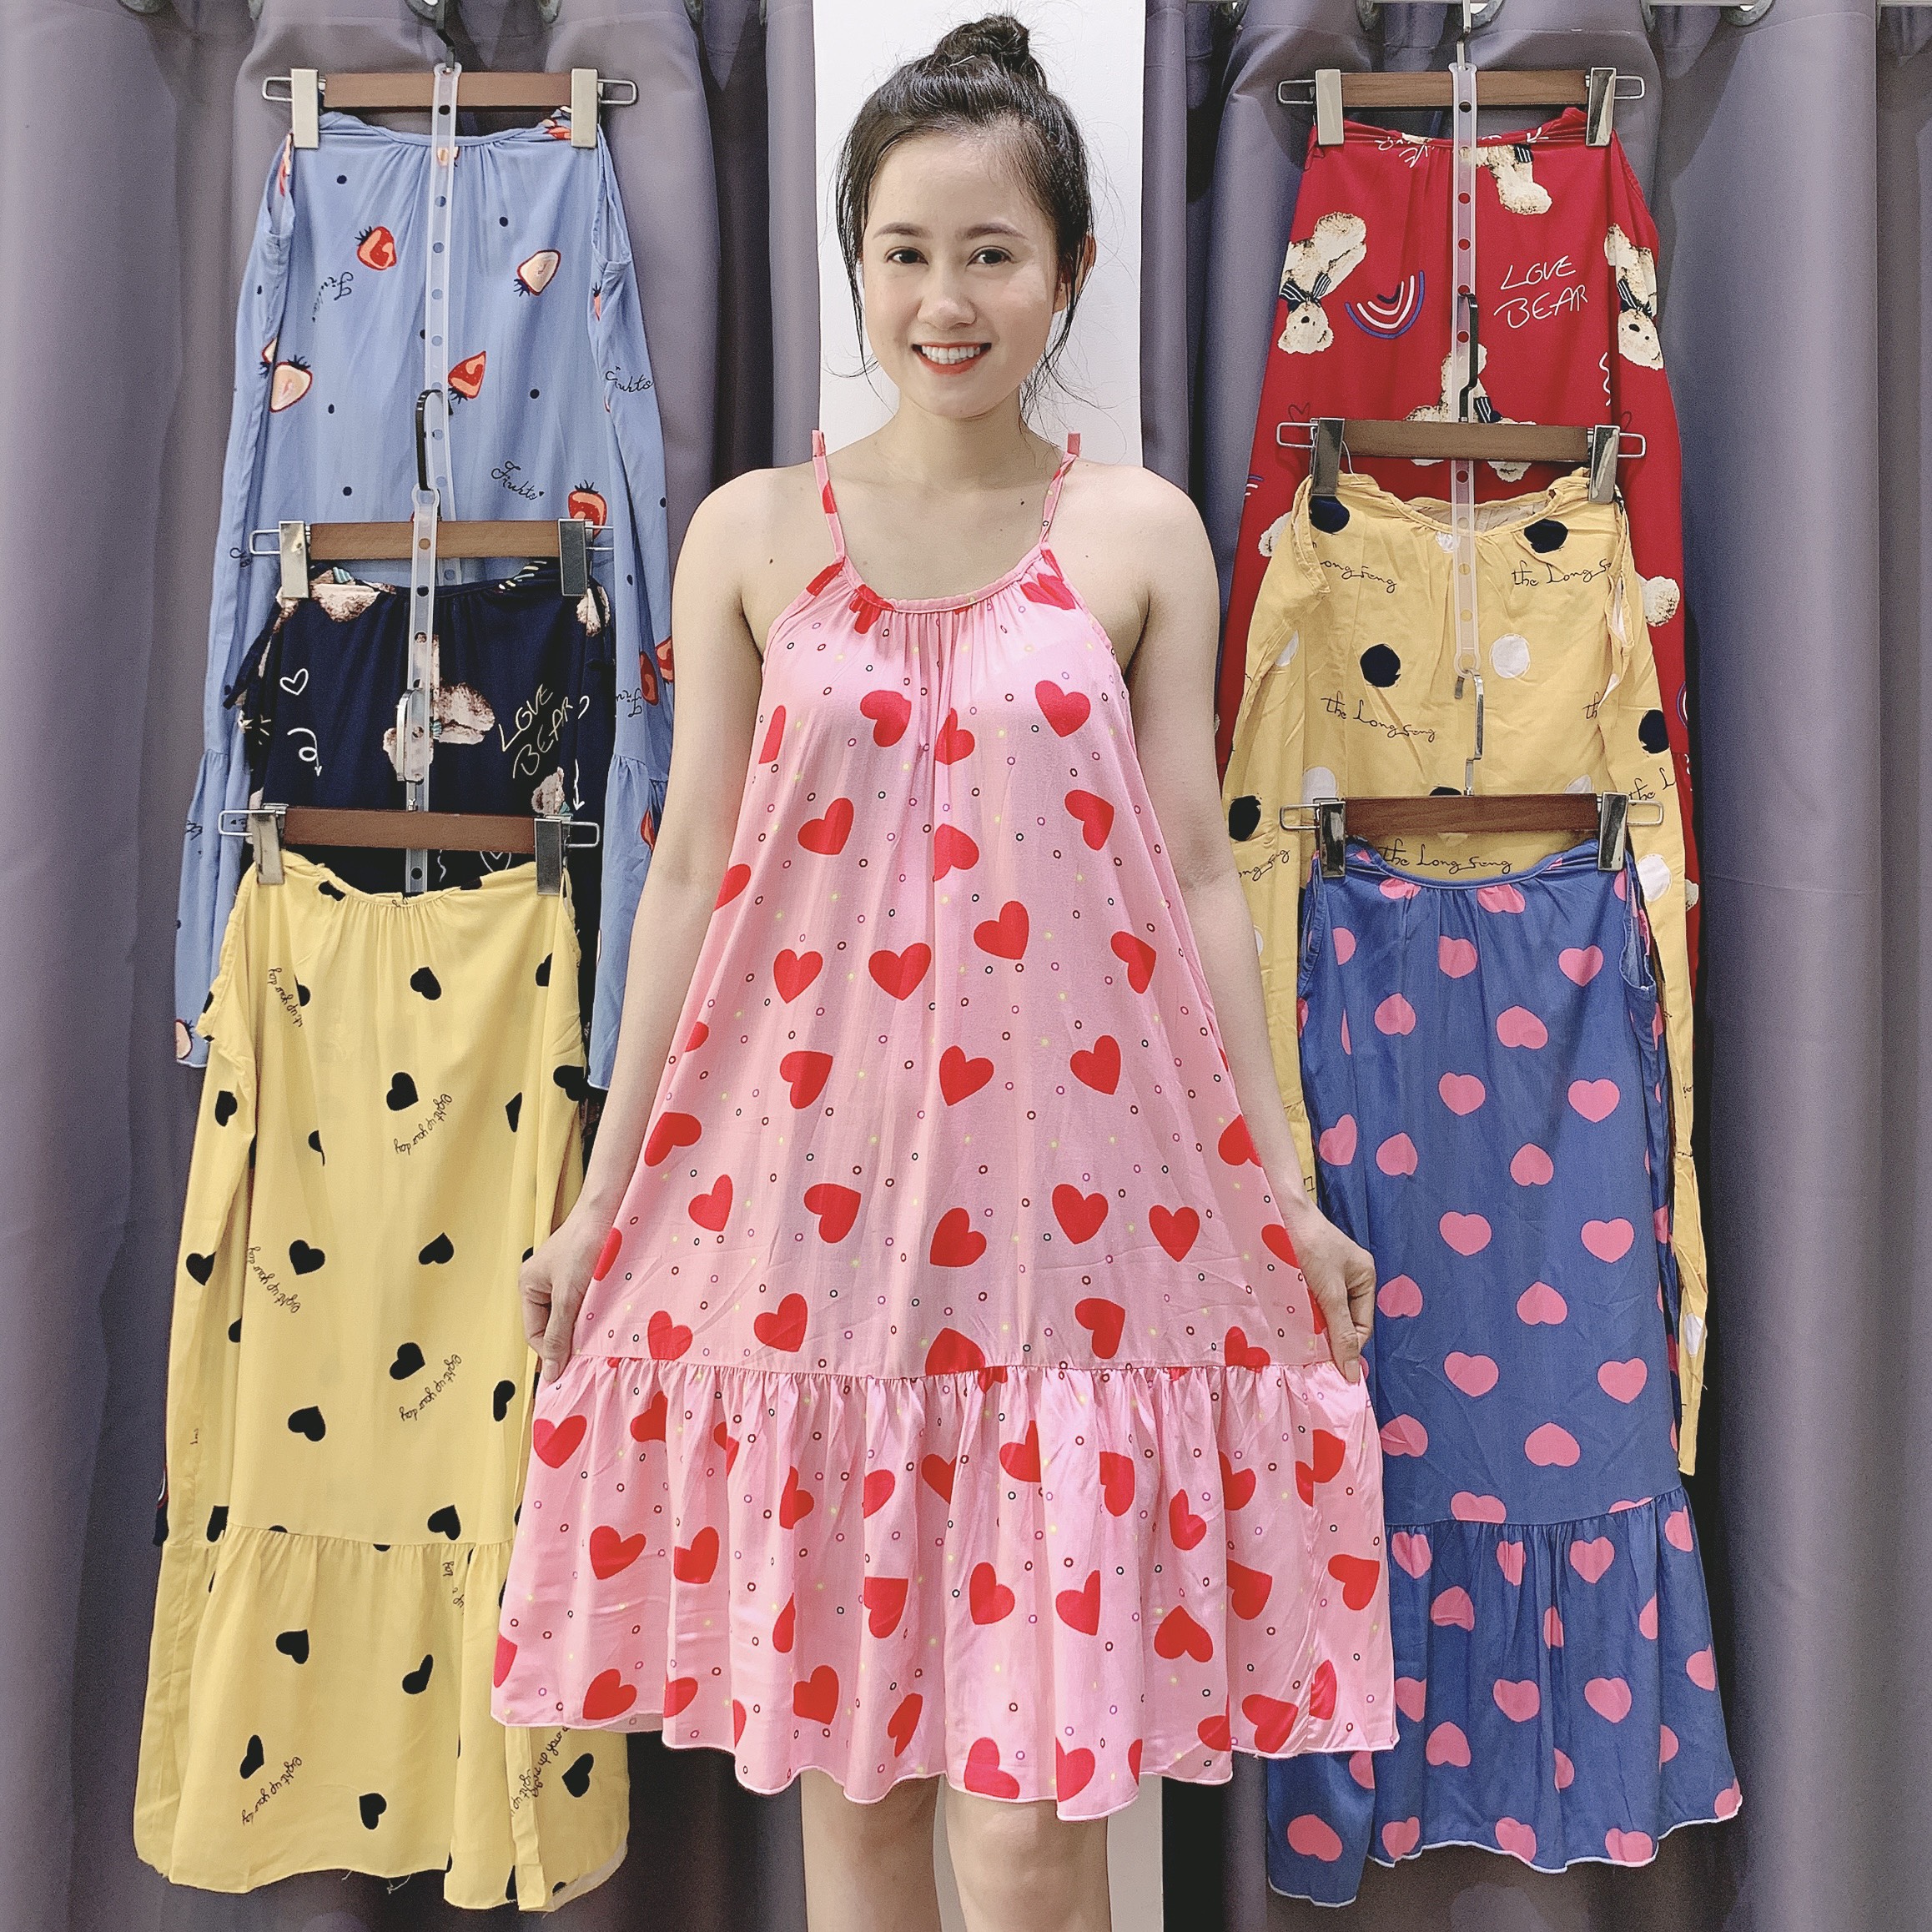 Mẫu Váy Suông Mặc Ở Nhà - khuyến mại giá rẻ mới nhất tháng 3【#1 Sale Off】